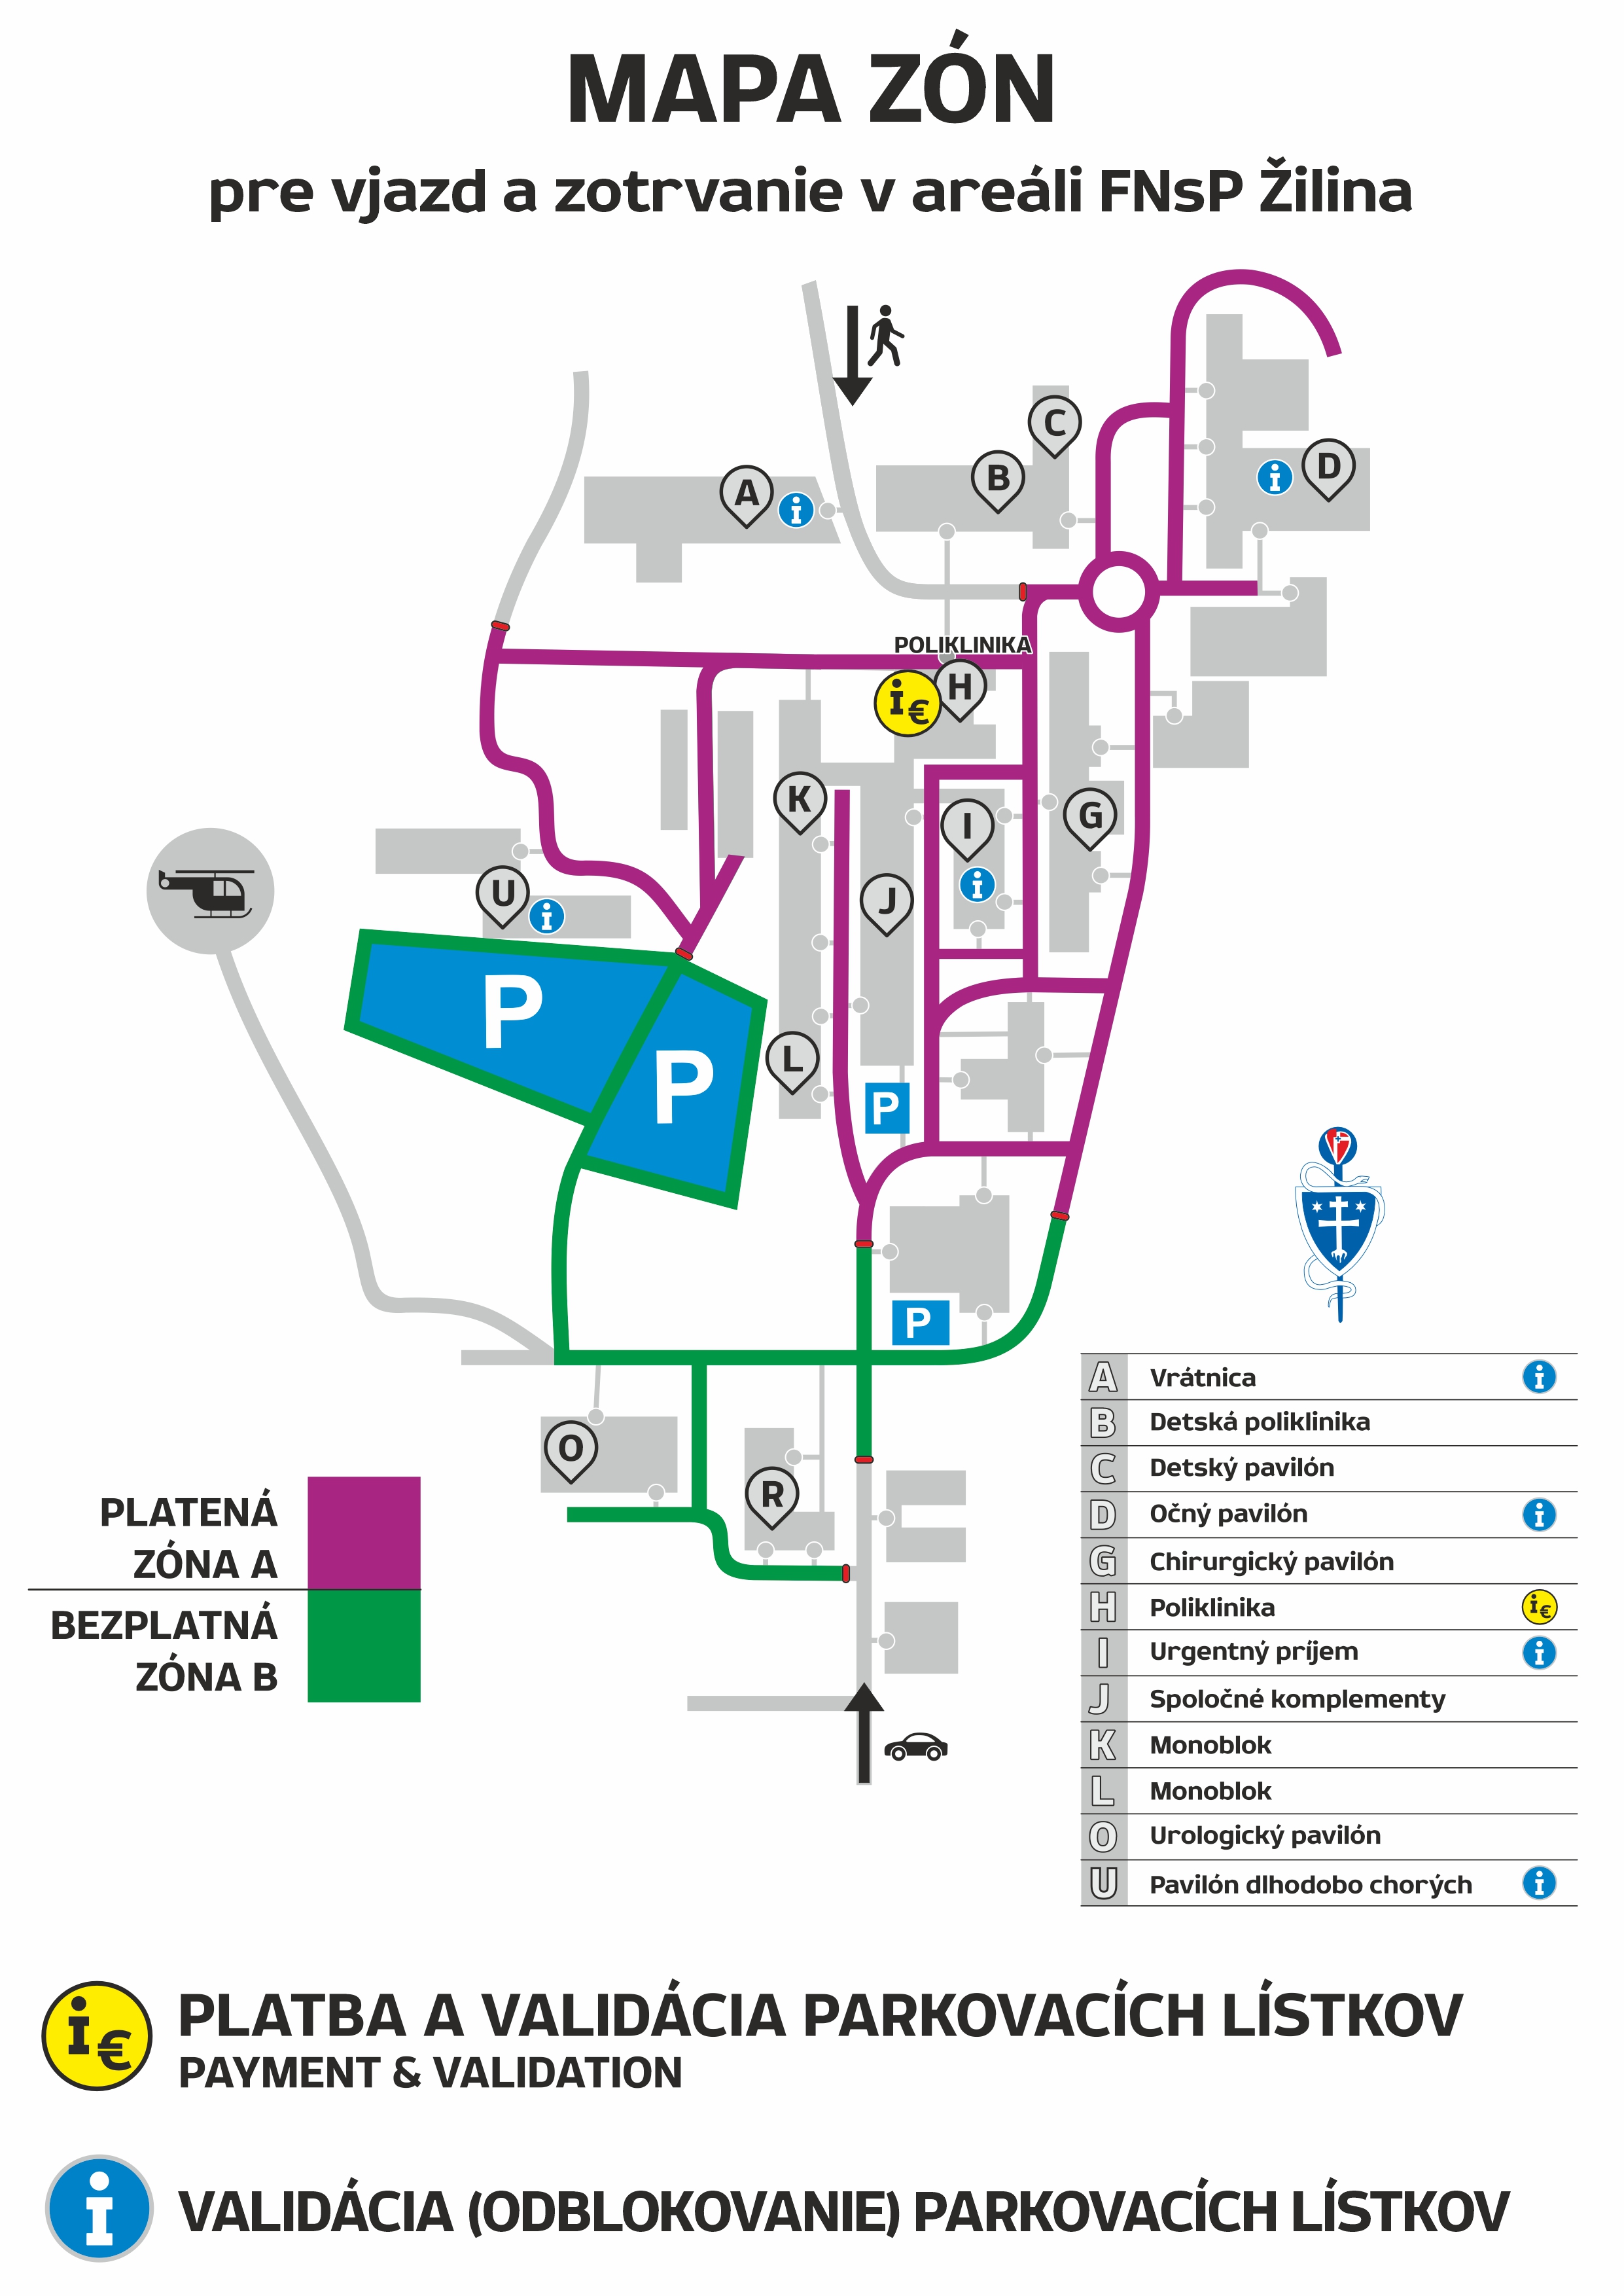 FNsP ZA Mapa zon pre zotrvanie vozidlom v areali FNsP Zilina